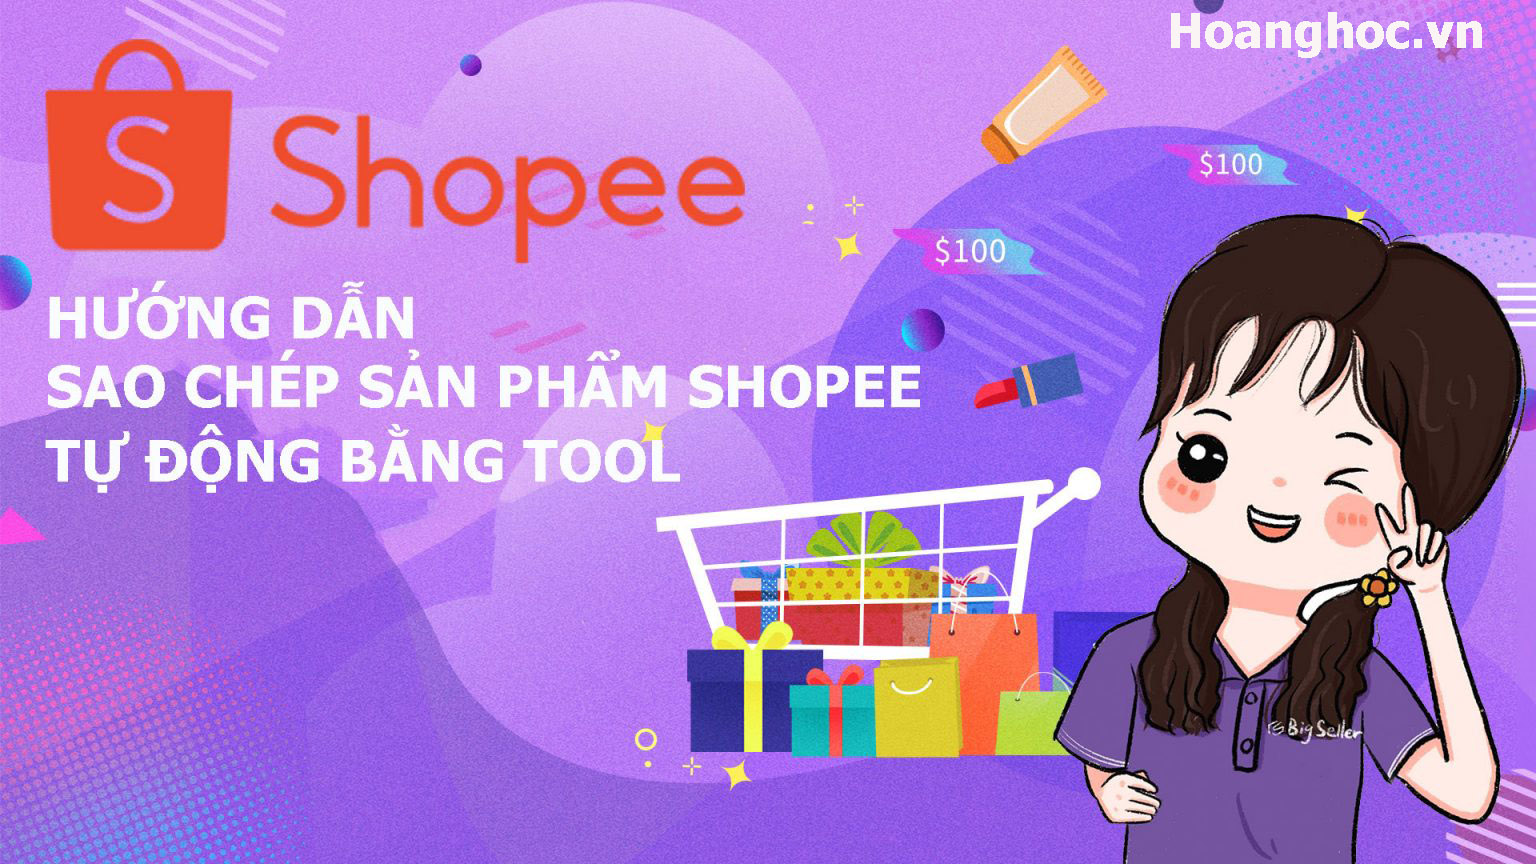 Hướng dẫn sao chép sản phẩm Shopee tự động bằng tool